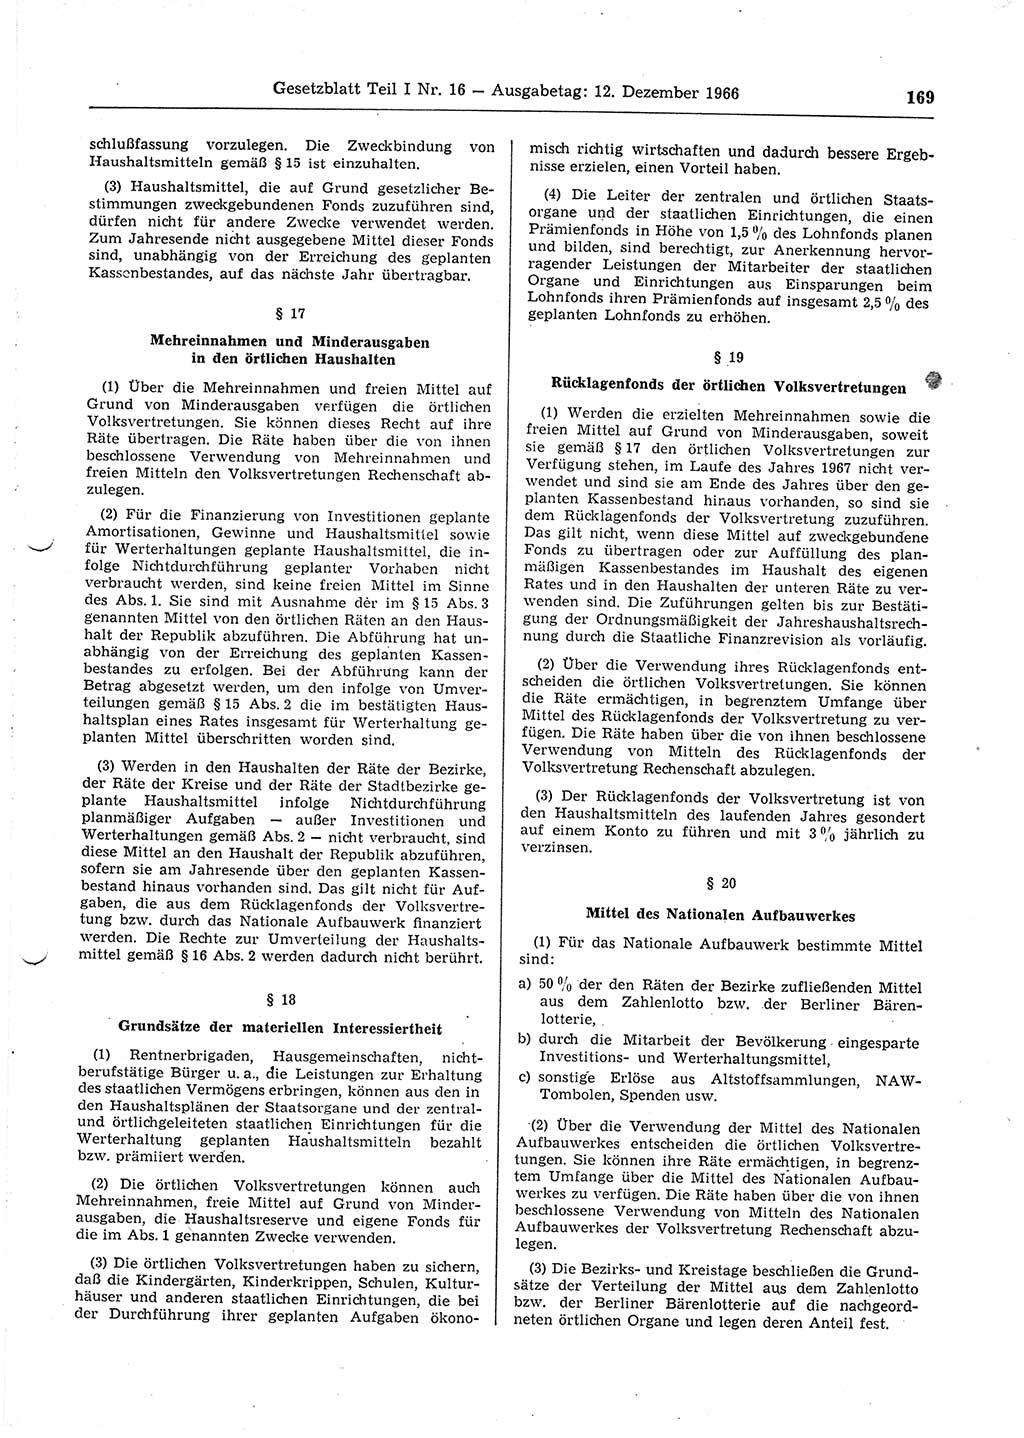 Gesetzblatt (GBl.) der Deutschen Demokratischen Republik (DDR) Teil Ⅰ 1966, Seite 169 (GBl. DDR Ⅰ 1966, S. 169)